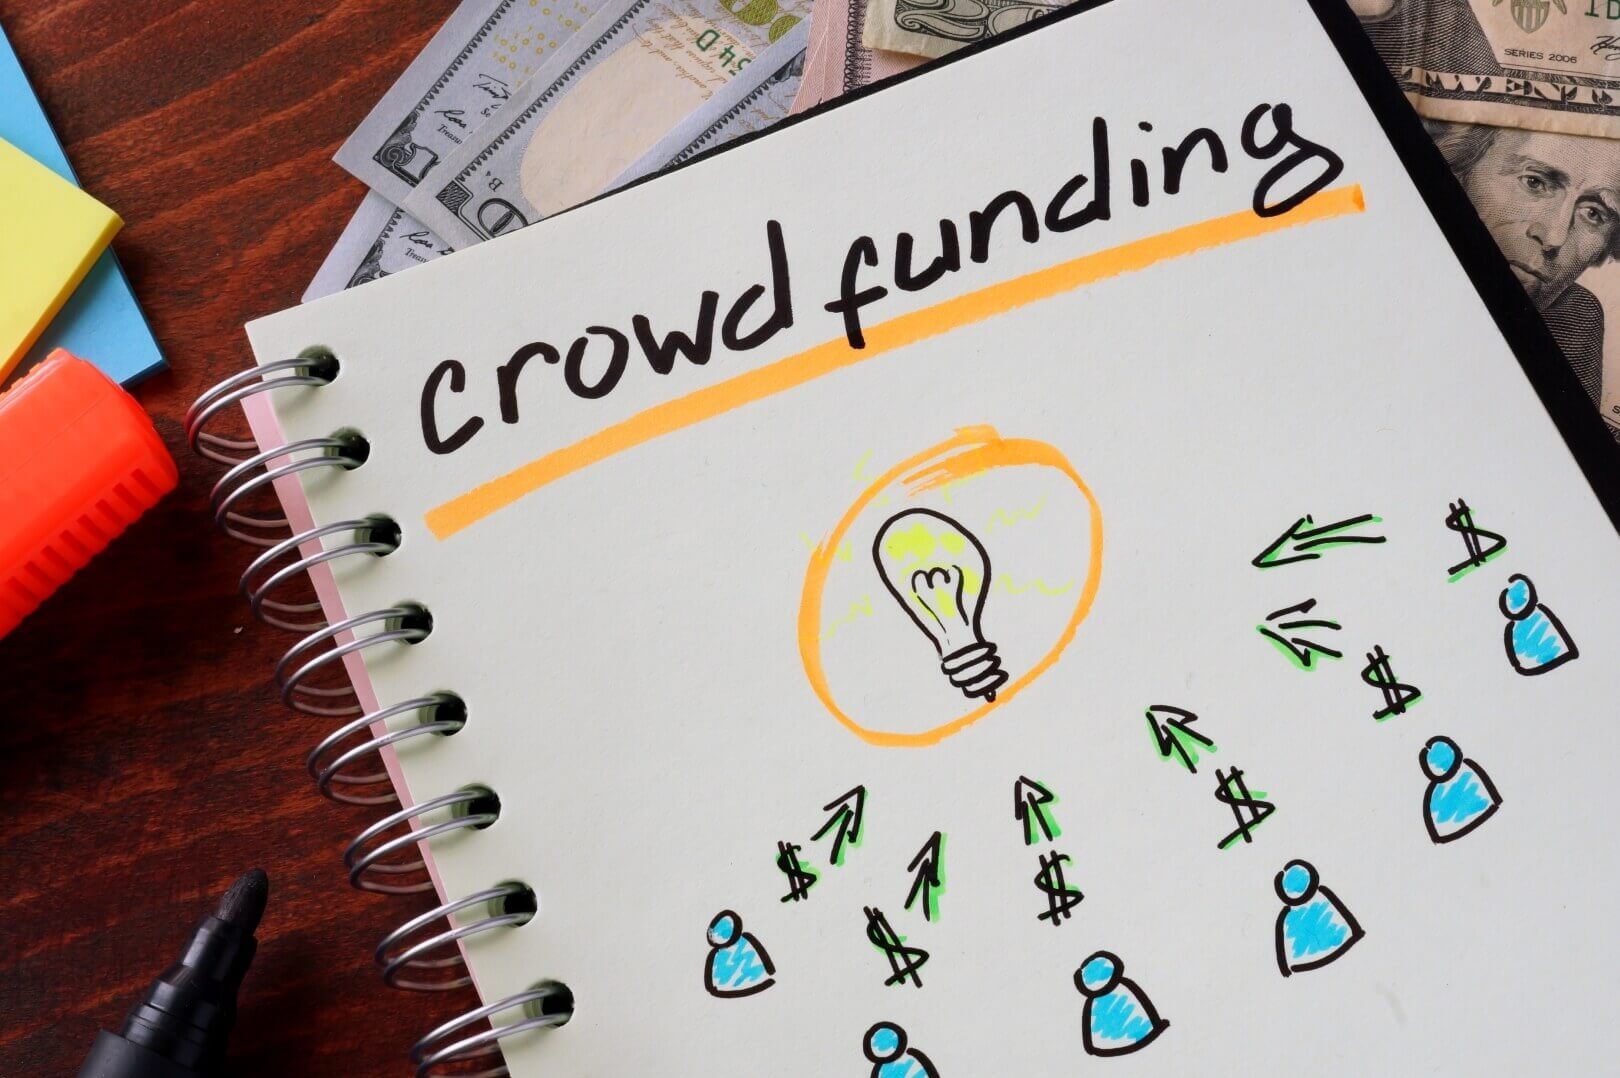 eww Crowdfunding